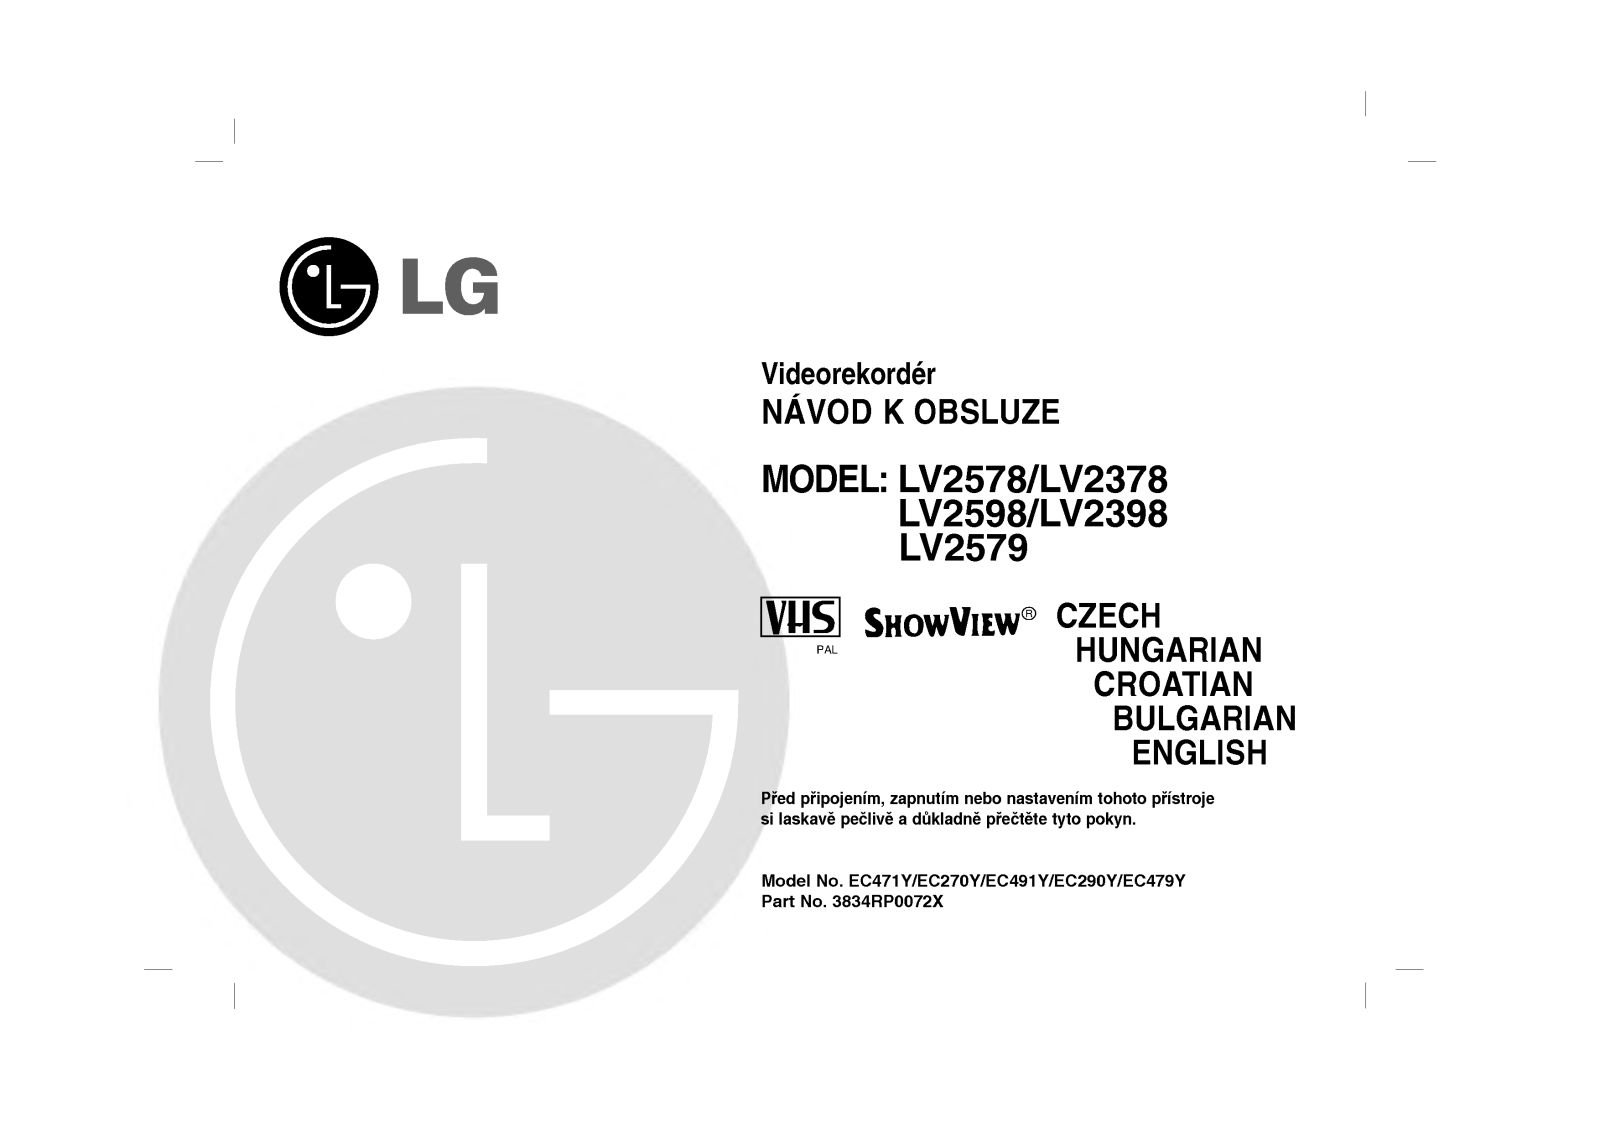 Lg LV2579, LV2398, LV2598, LV2378, LV2578 user Manual